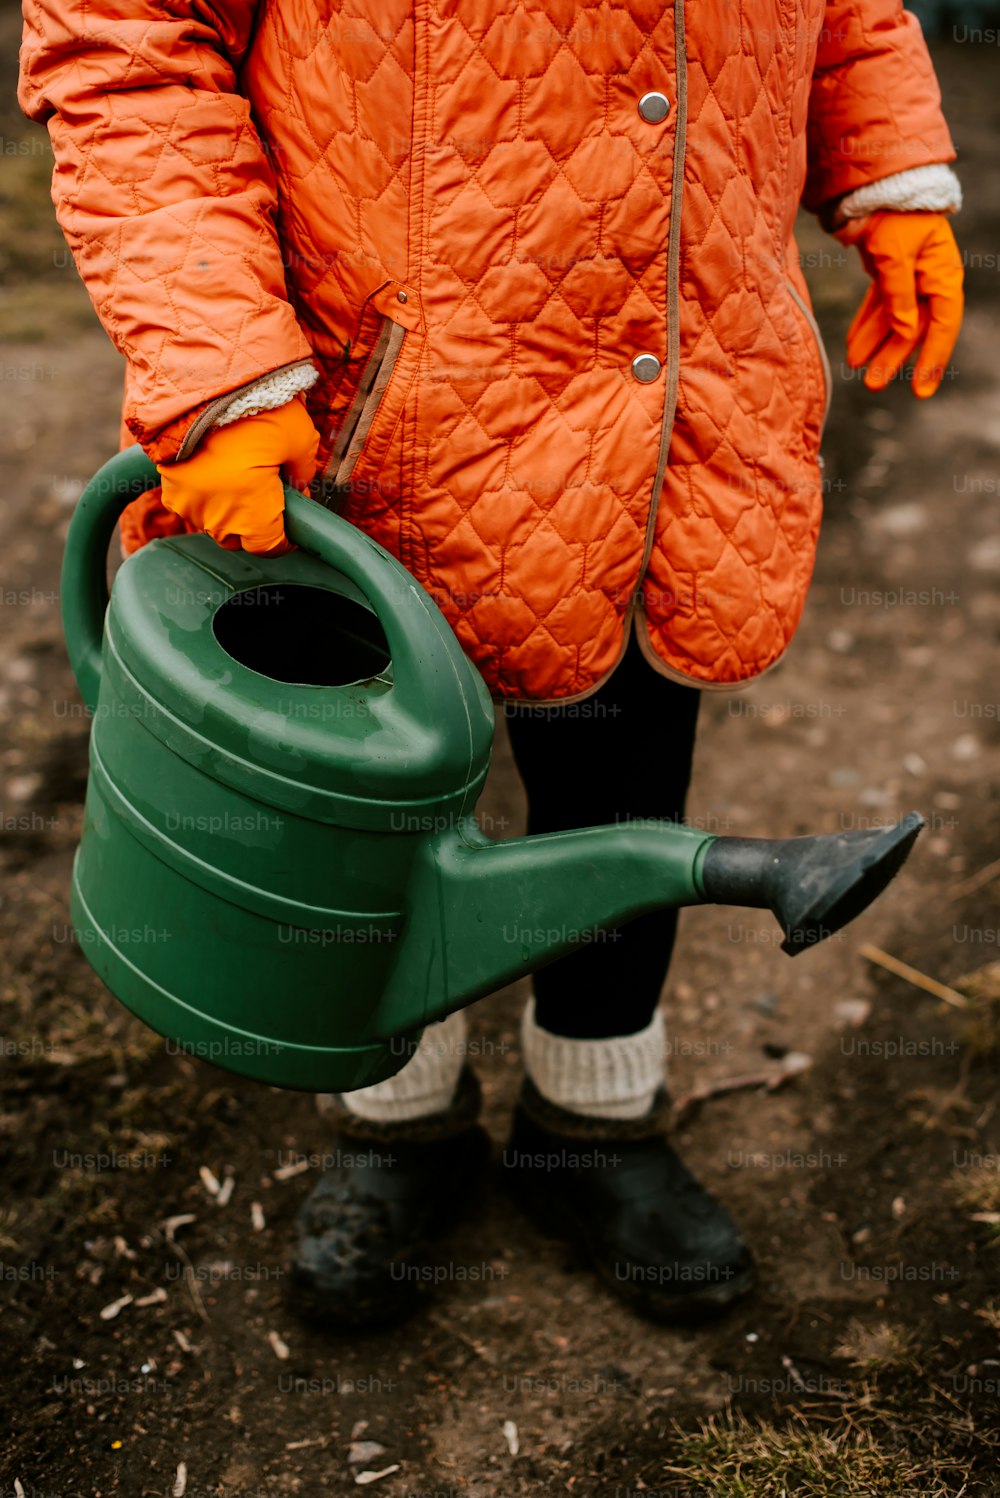 �녹색 물뿌리개를 들고 있는 주황색 재킷을 입은 사람